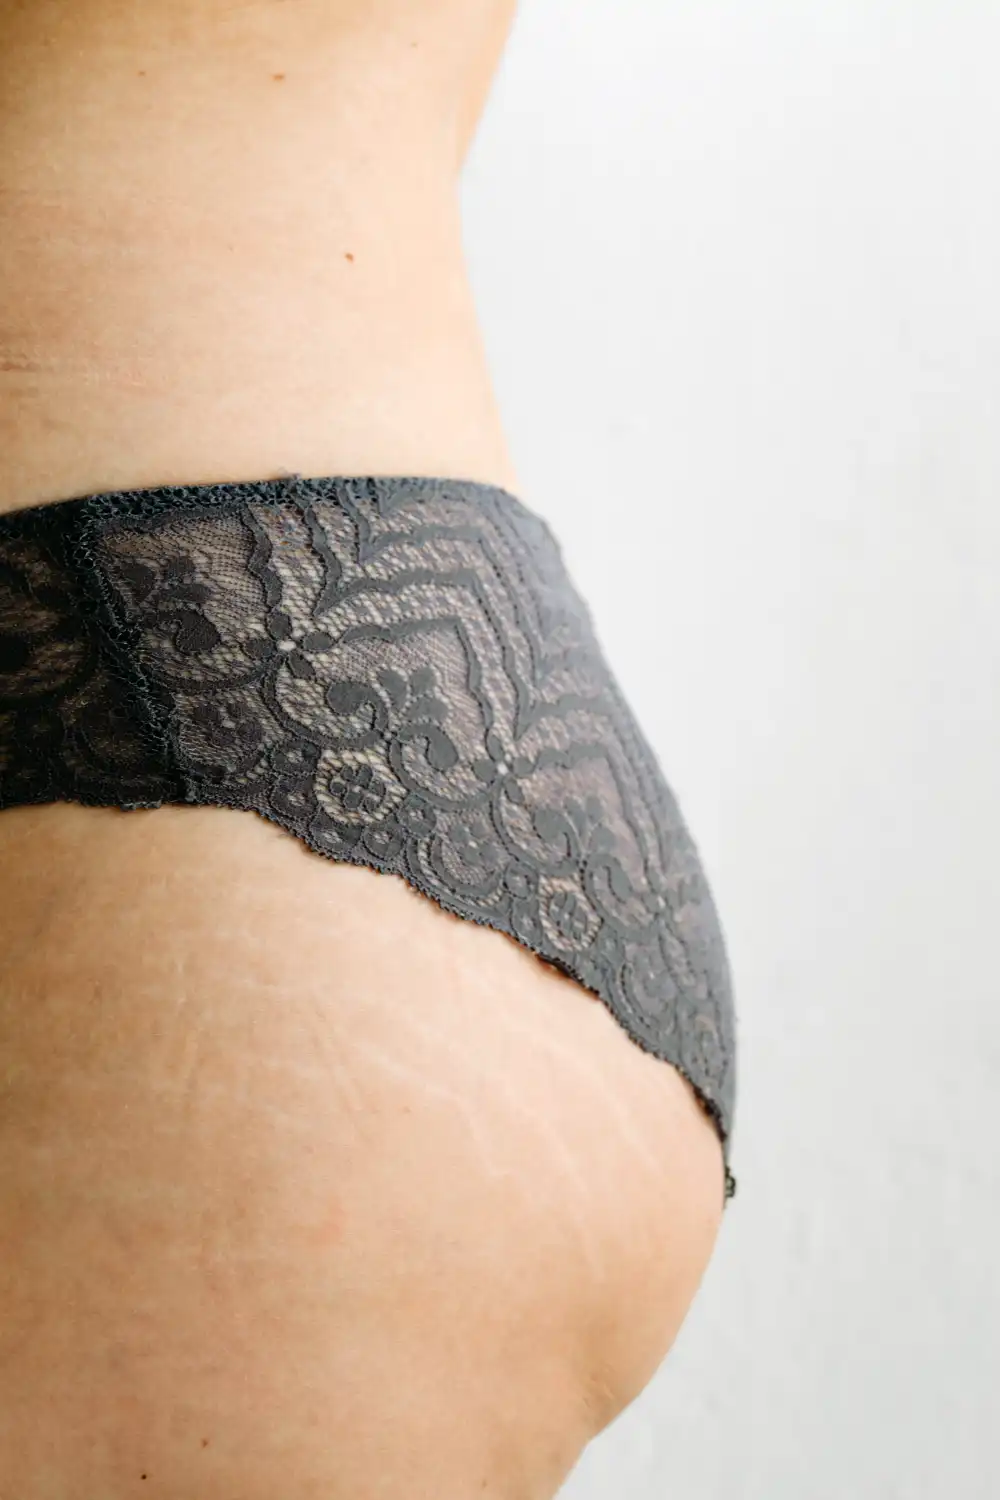 Lady wearing black lace underwear